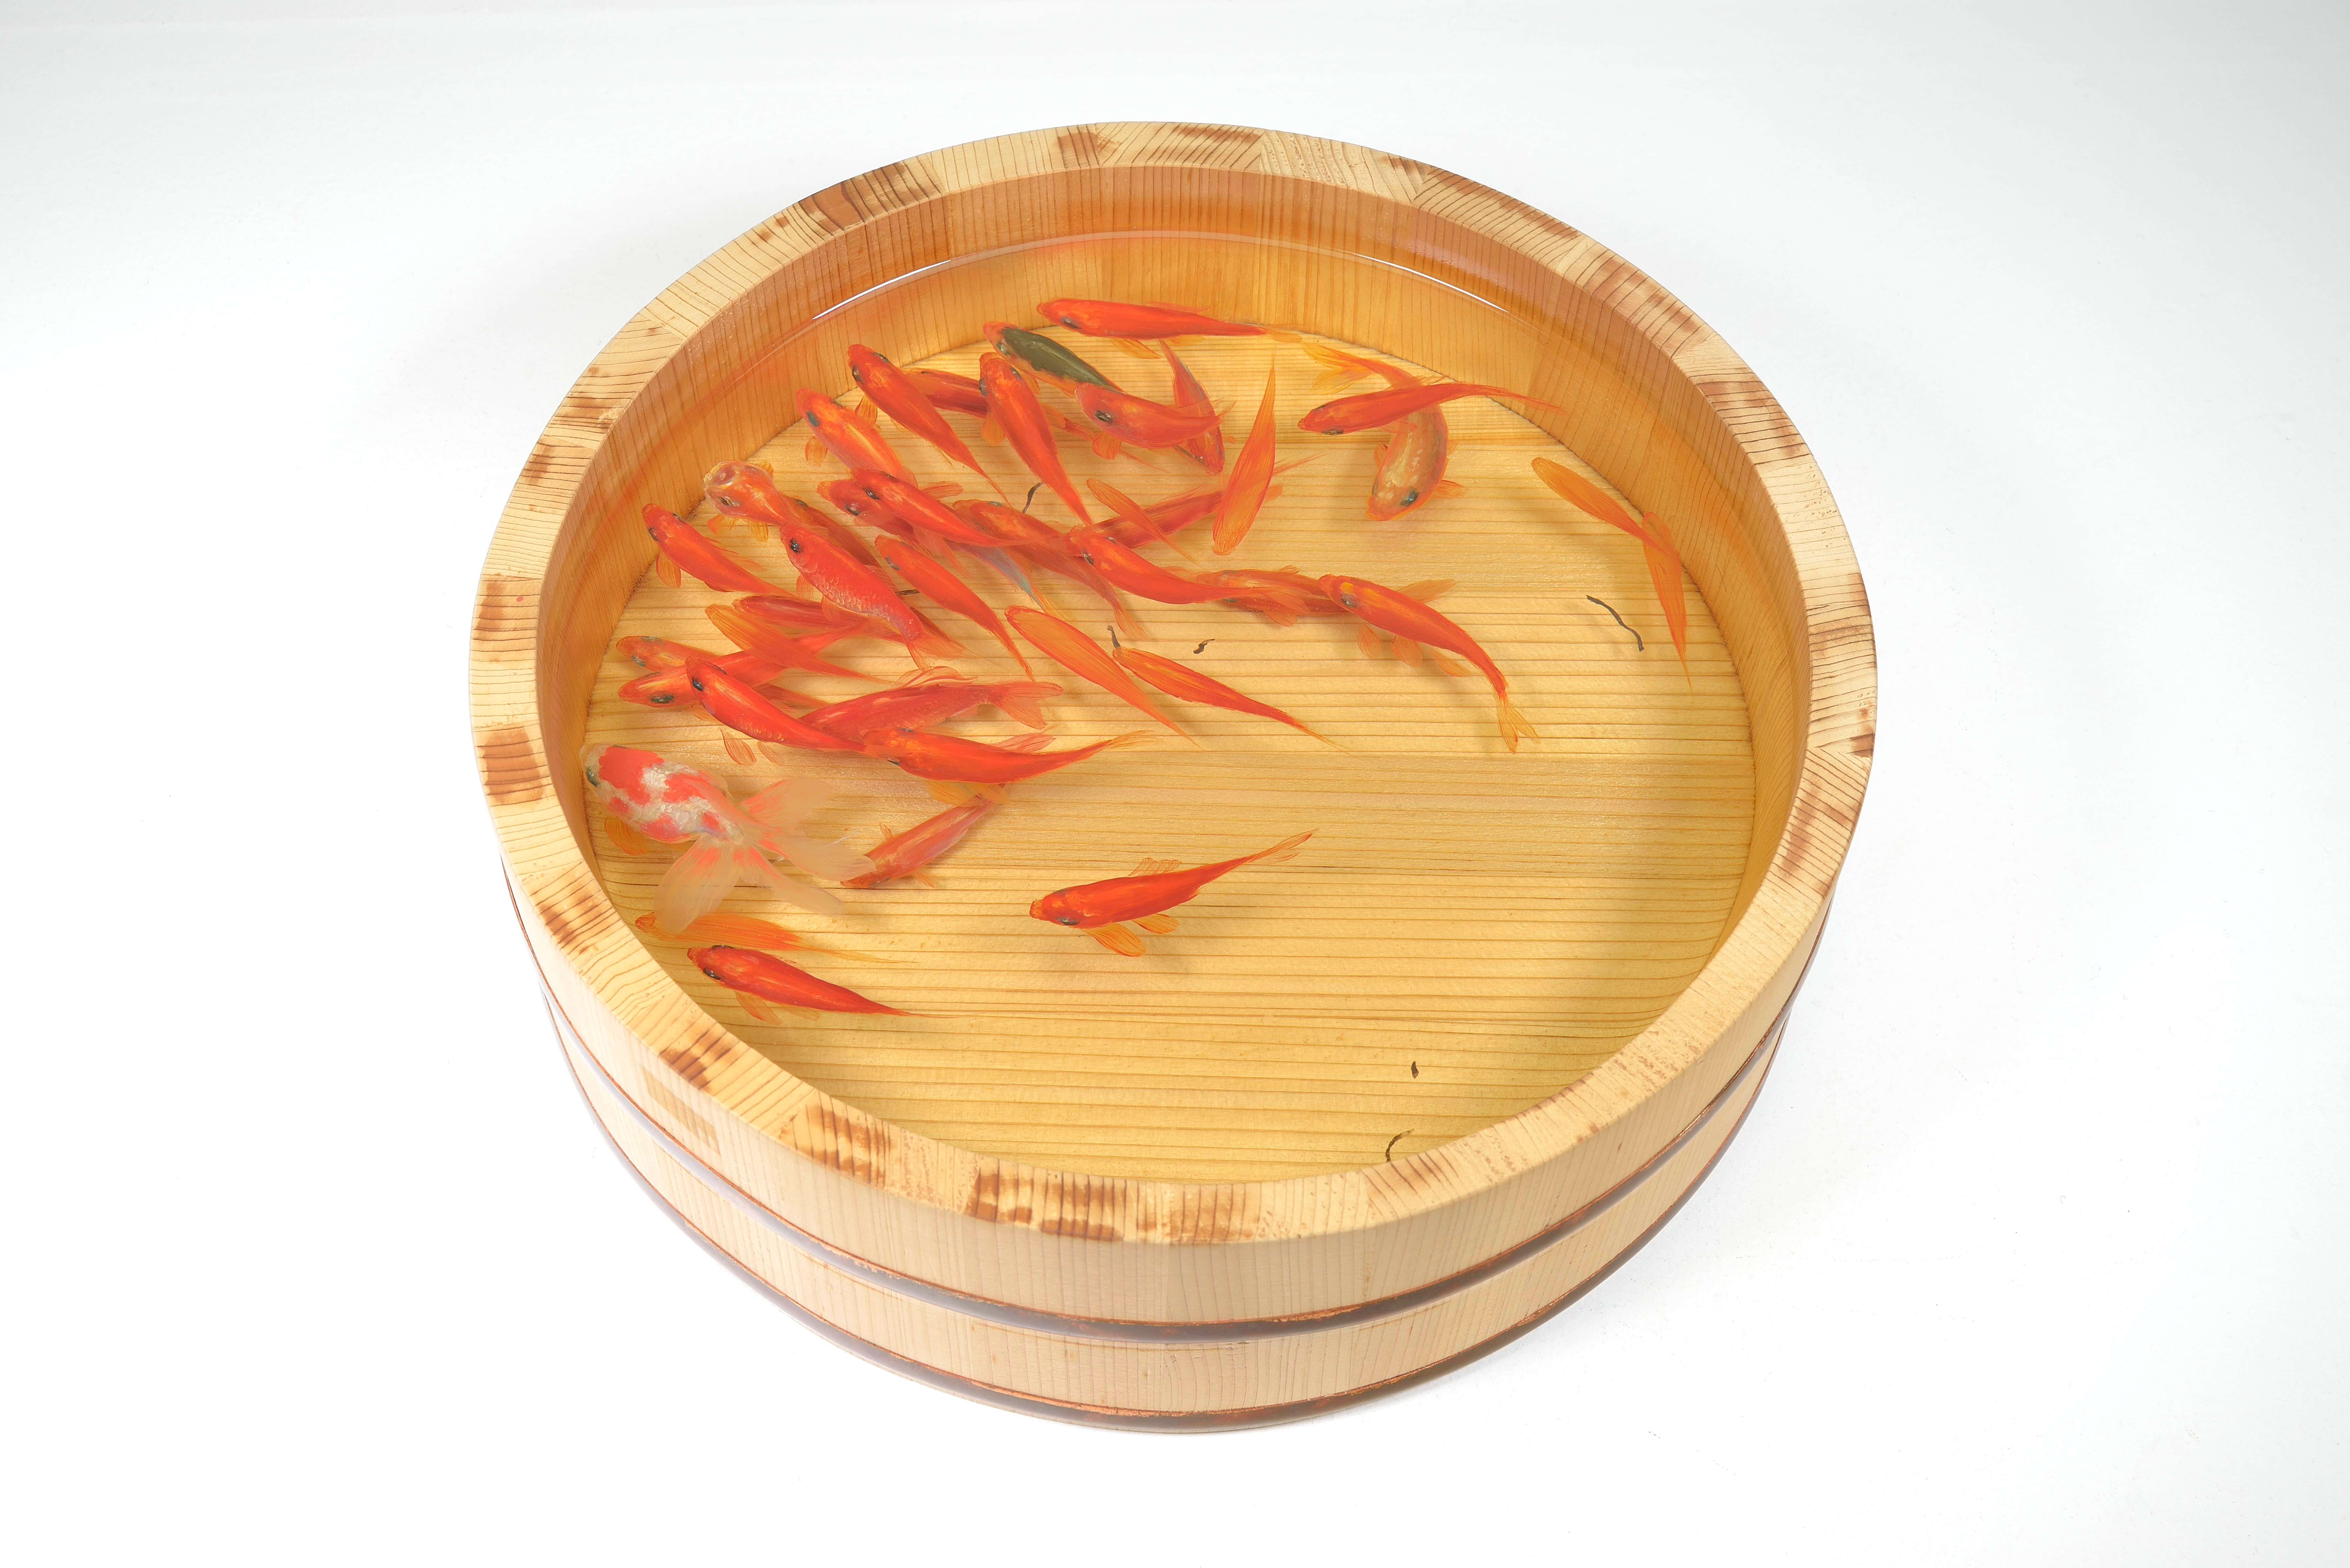 深堀隆介運用壓克力樹脂技術繪製出栩栩如生的金魚，2009年作品〈四個桶-和金〉。圖 / 深堀隆介提供